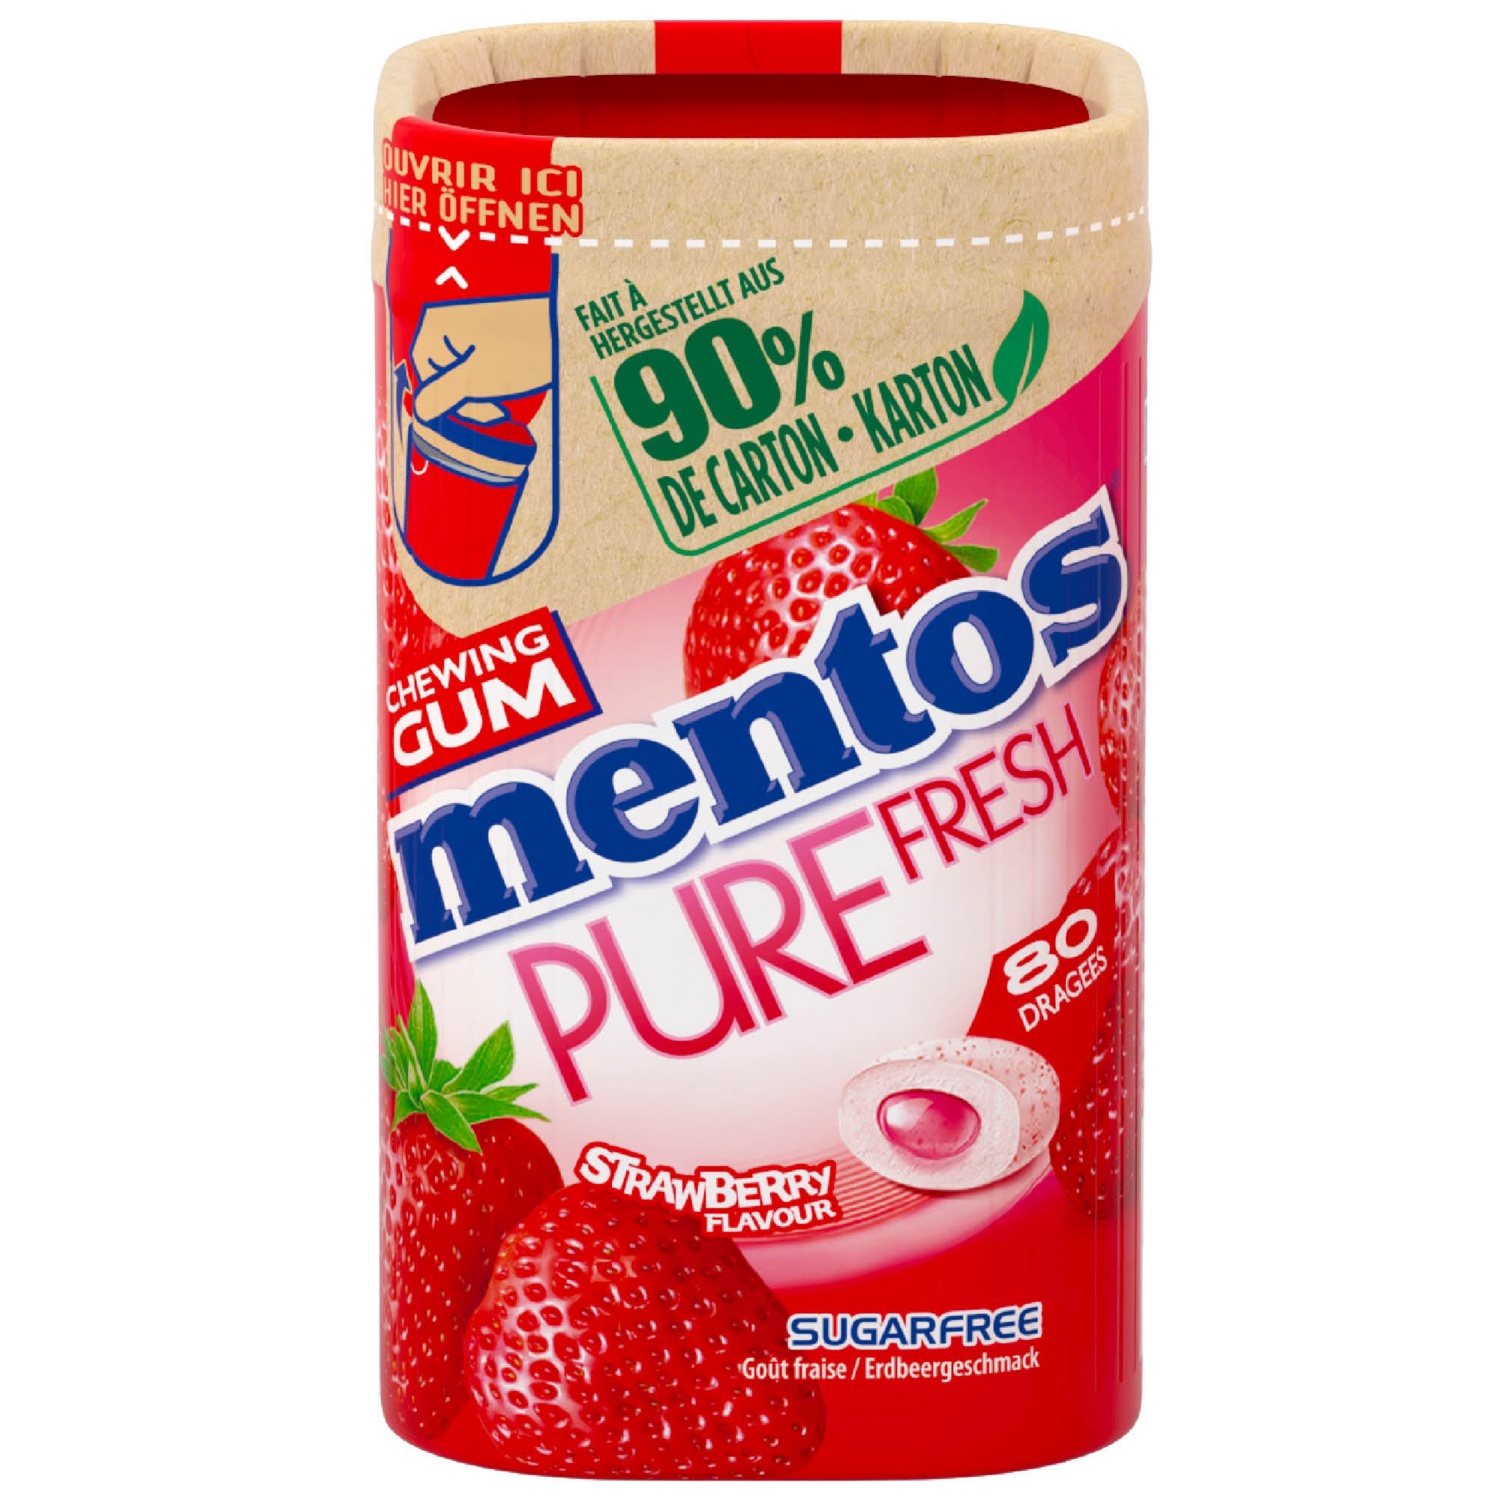 Mentos Pure Fresh, Strawberry